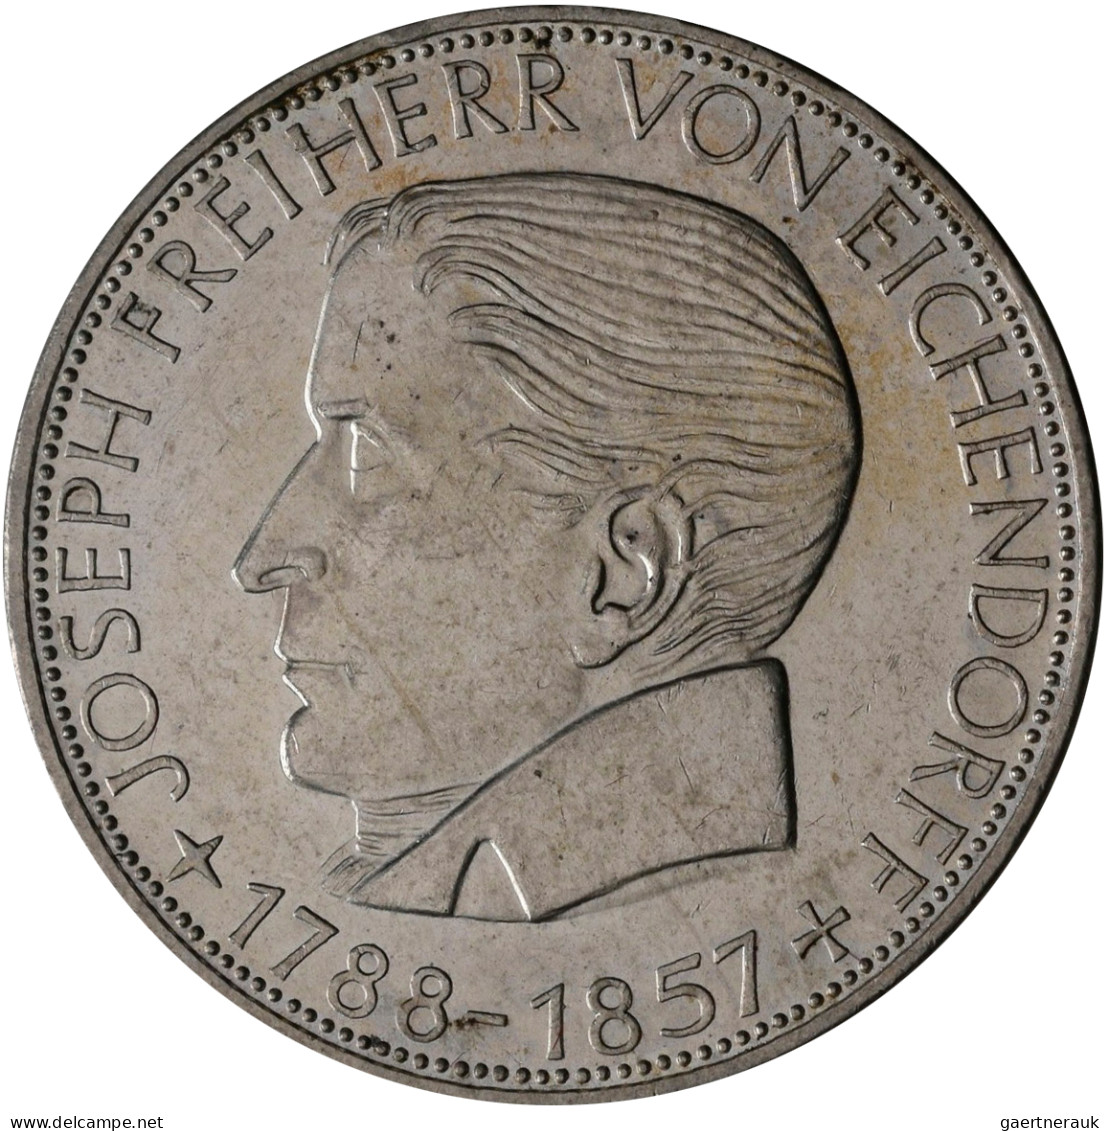 Bundesrepublik Deutschland 1948-2001: Lindnerbox mit 43 x 5 DM Gedenkmünzen der